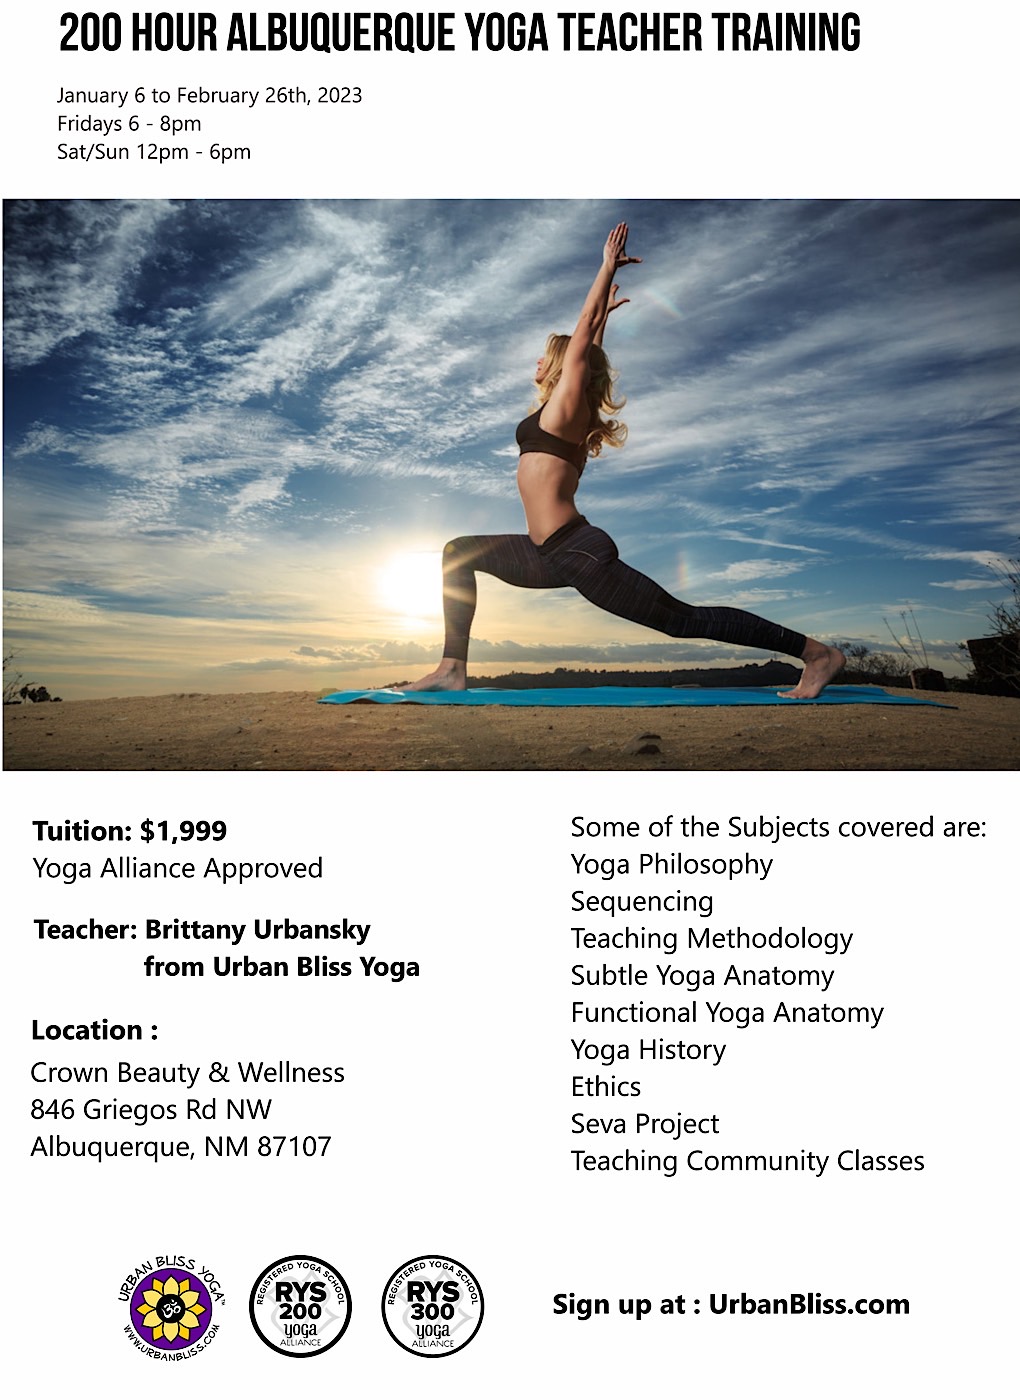 Albuquerque Yoga Teacher Training